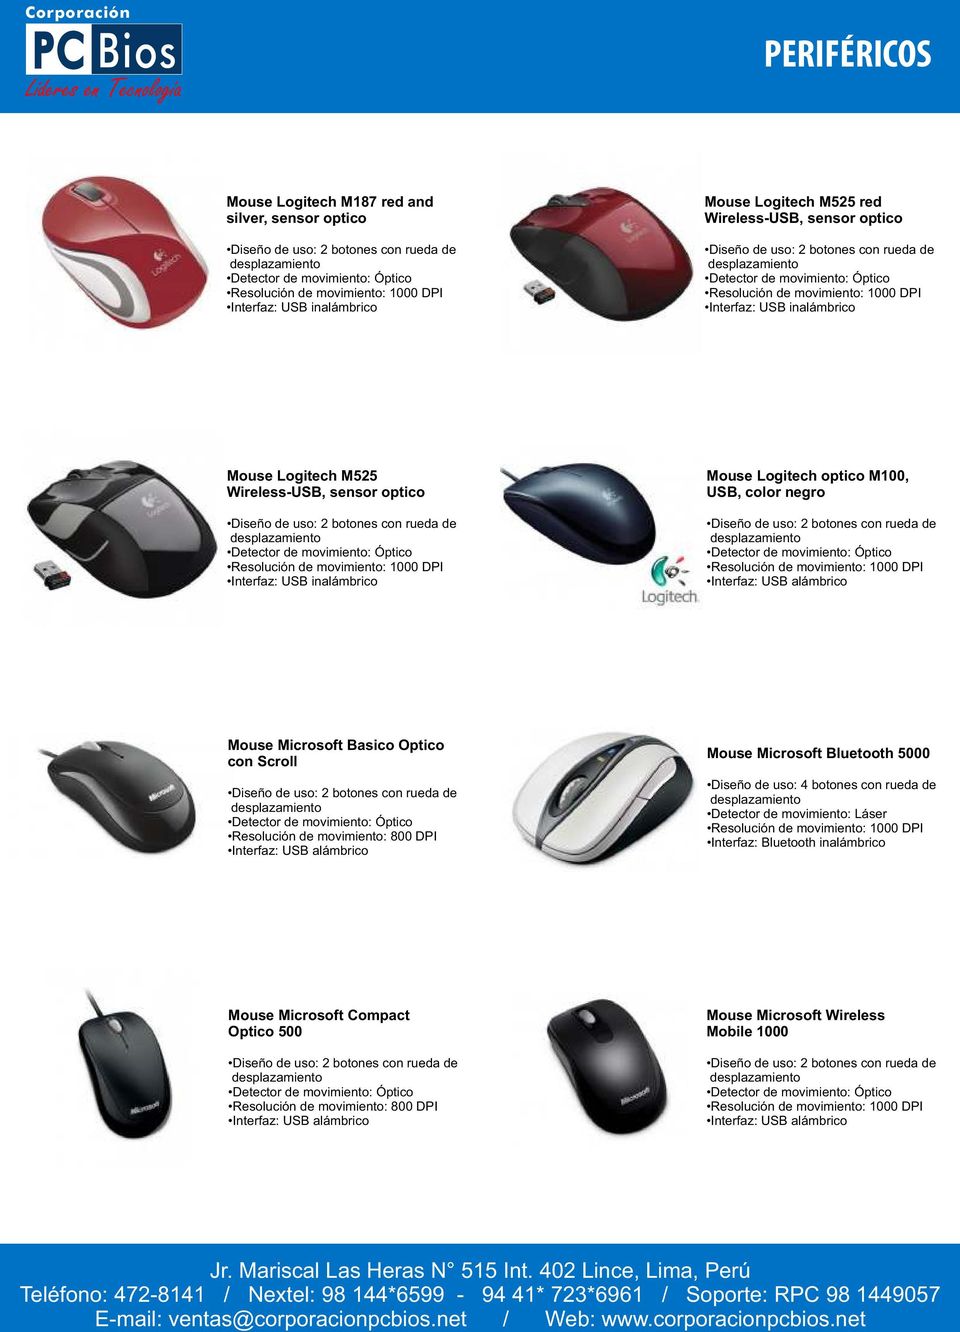 Resolución de movimiento: 800 DPI Mouse Microsoft Bluetooth 5000 Diseño de uso: 4 botones con rueda de Interfaz: